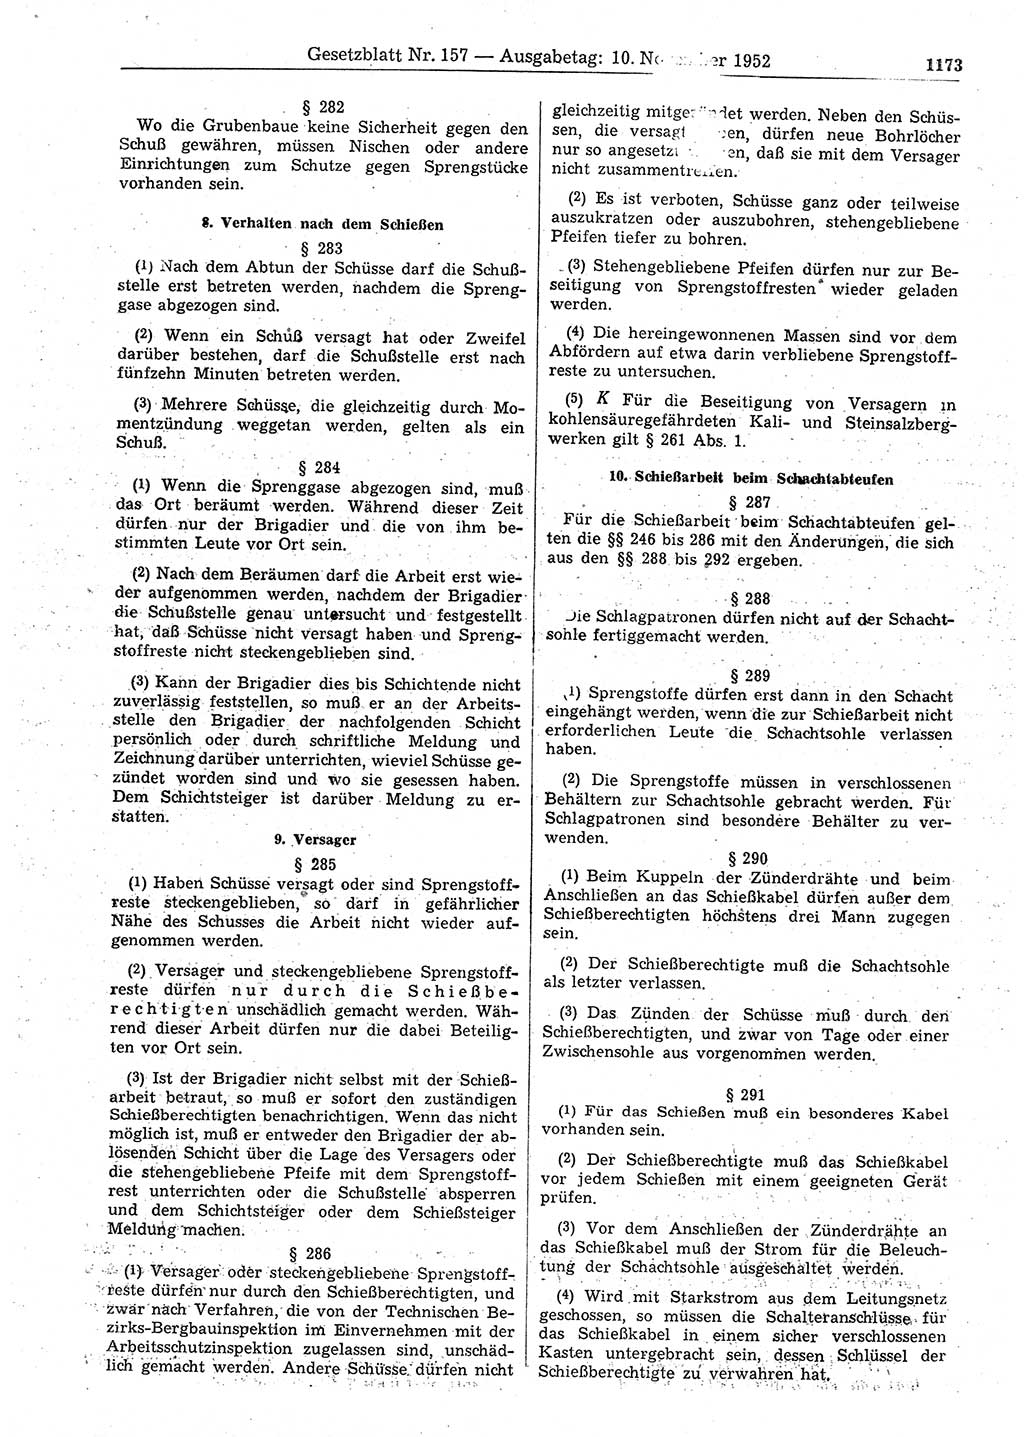 Gesetzblatt (GBl.) der Deutschen Demokratischen Republik (DDR) 1952, Seite 1173 (GBl. DDR 1952, S. 1173)